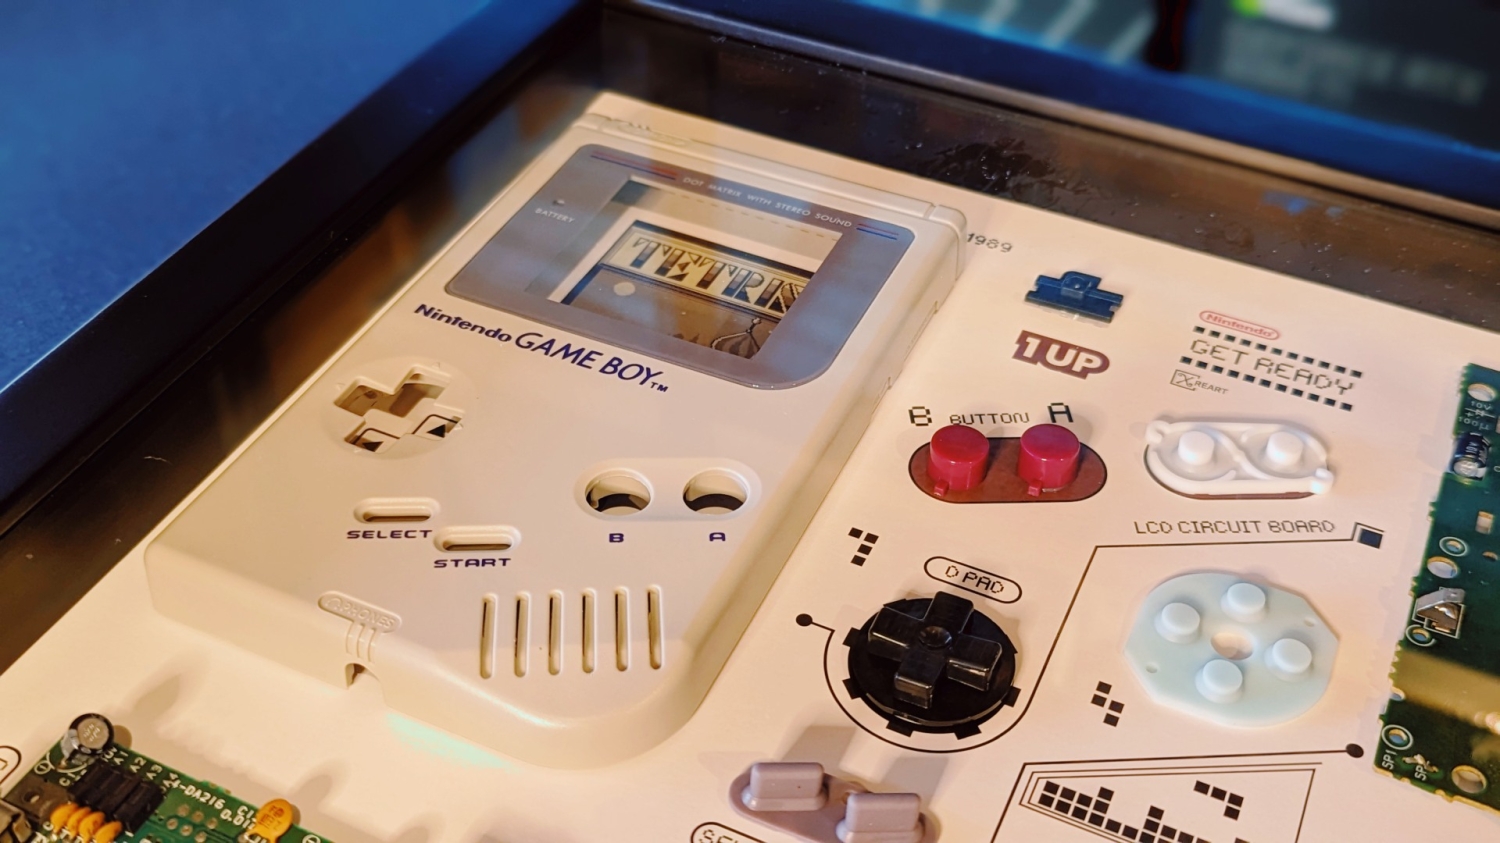 TweakTown Enlarged Image - Xreart Nintendo Game Boy disassembled art.